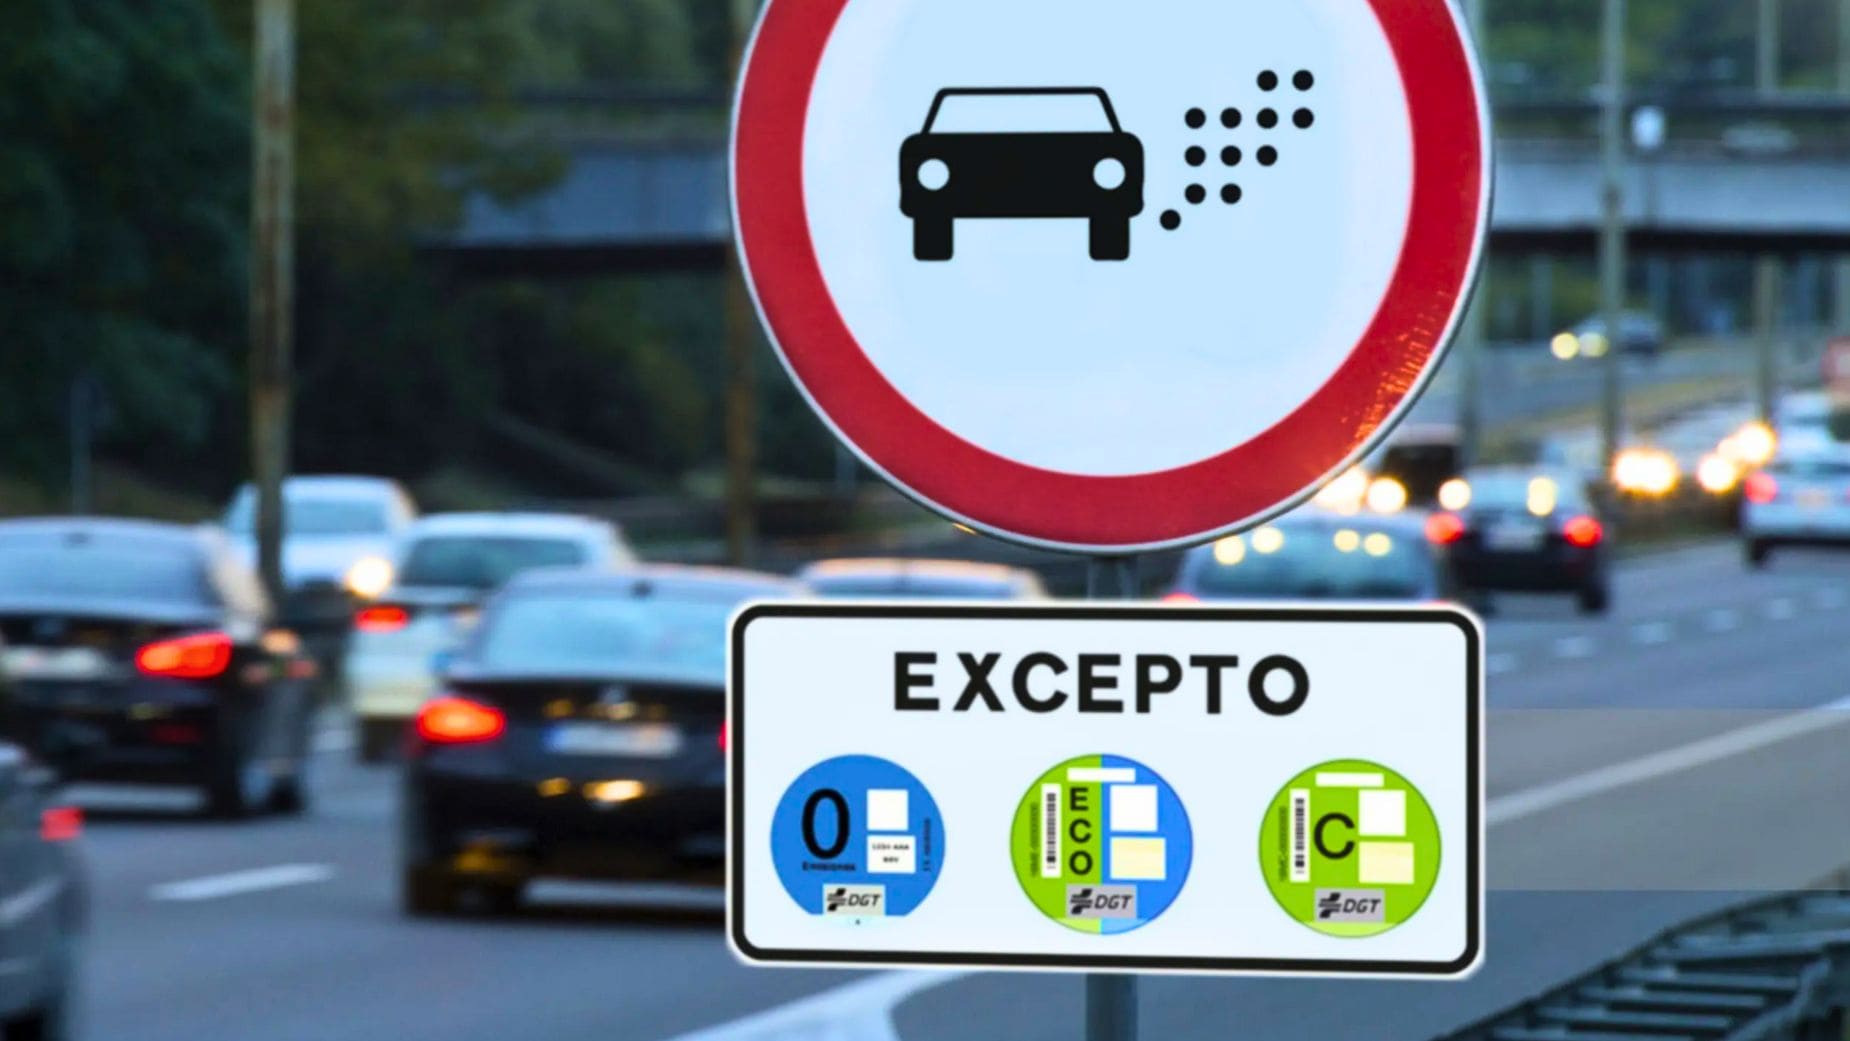 La nueva señal de tráfico de la DGT con multas de 200 euros